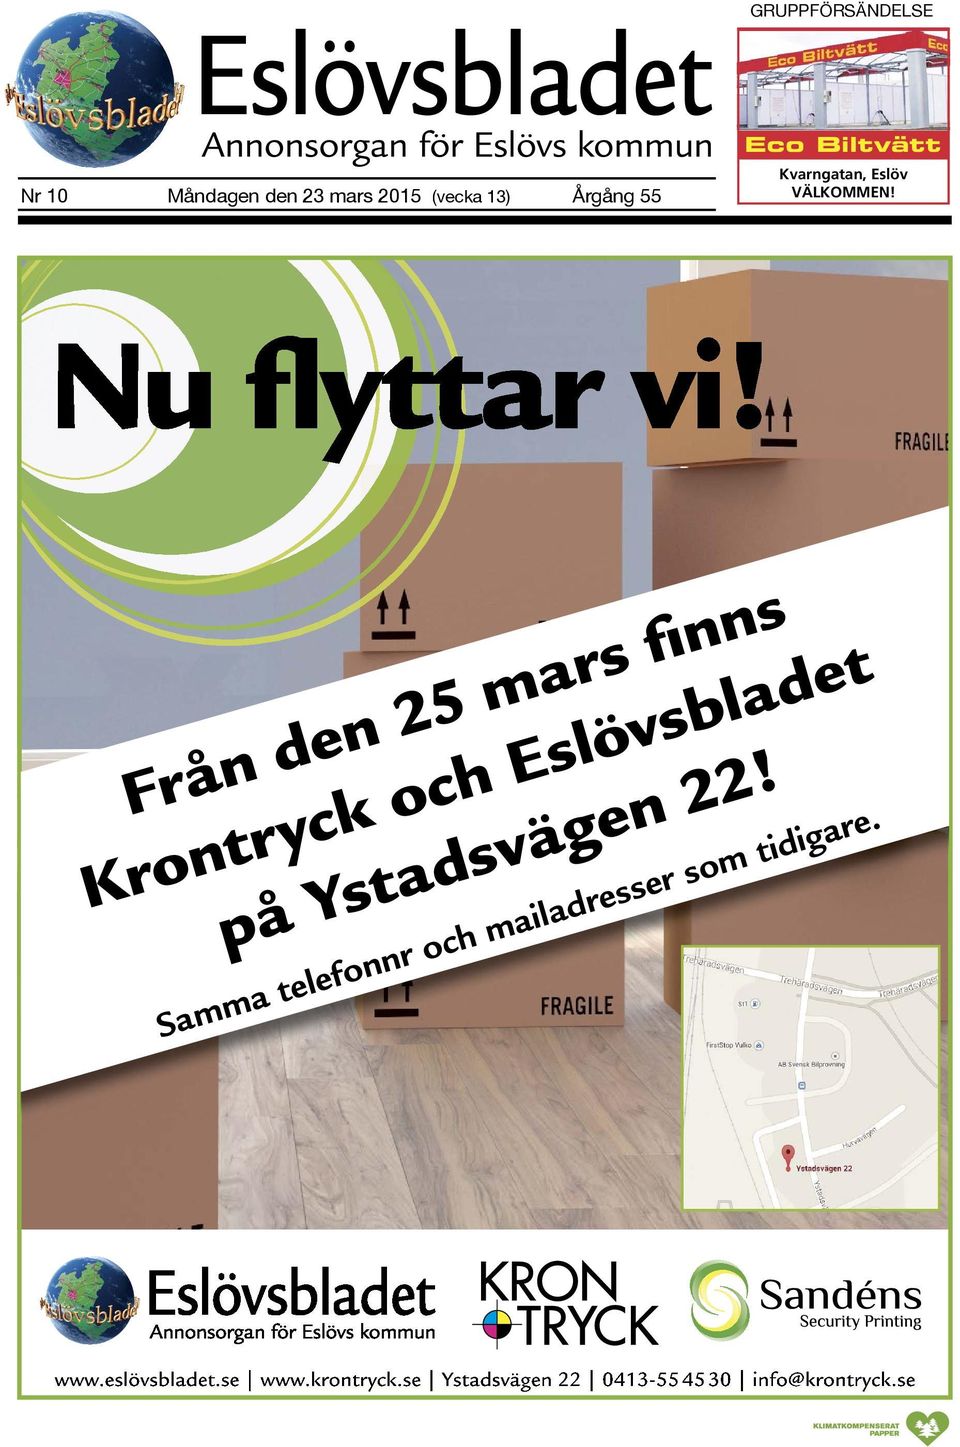 Från den 25 mars finns Krontryck och Eslövsbladet på Ystadsvägen 22!